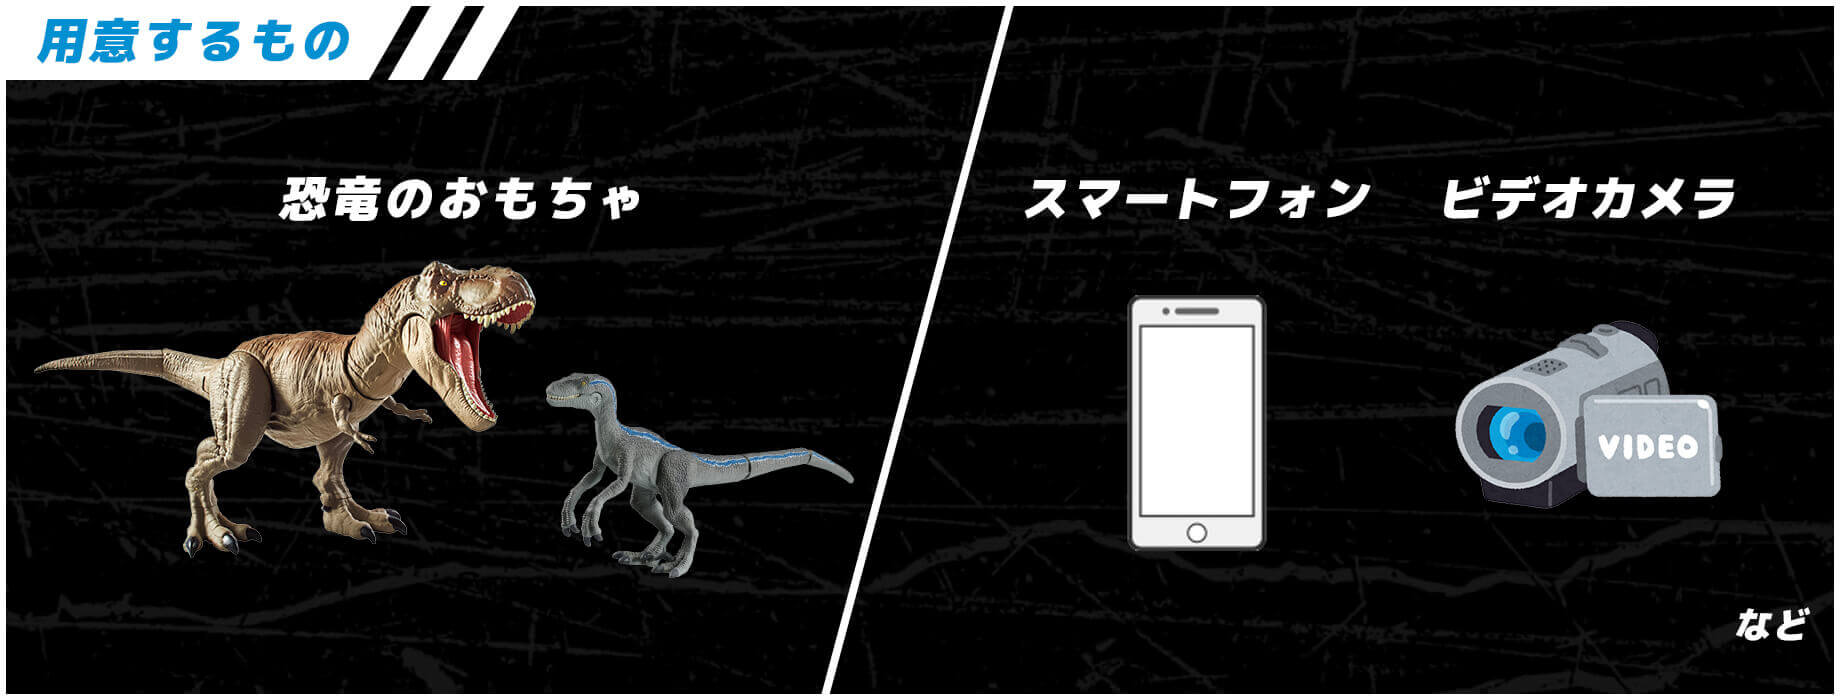 用意するもの 恐竜のおもちゃ スマートフォン ビデオカメラ